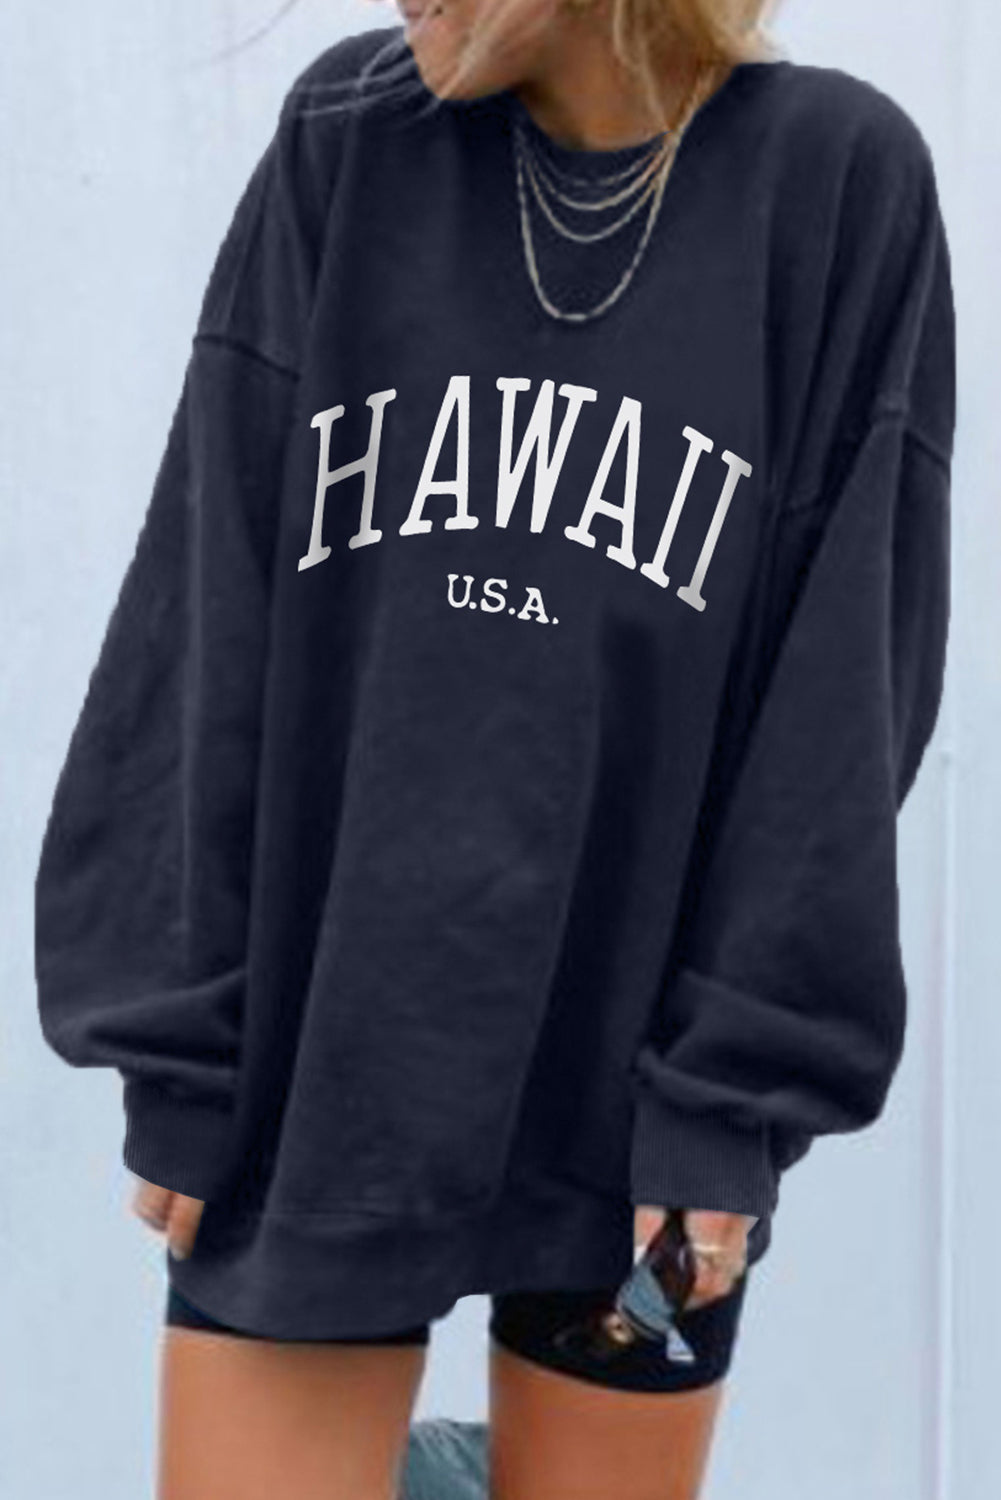 Hawaii oversized graphic sweatshirt